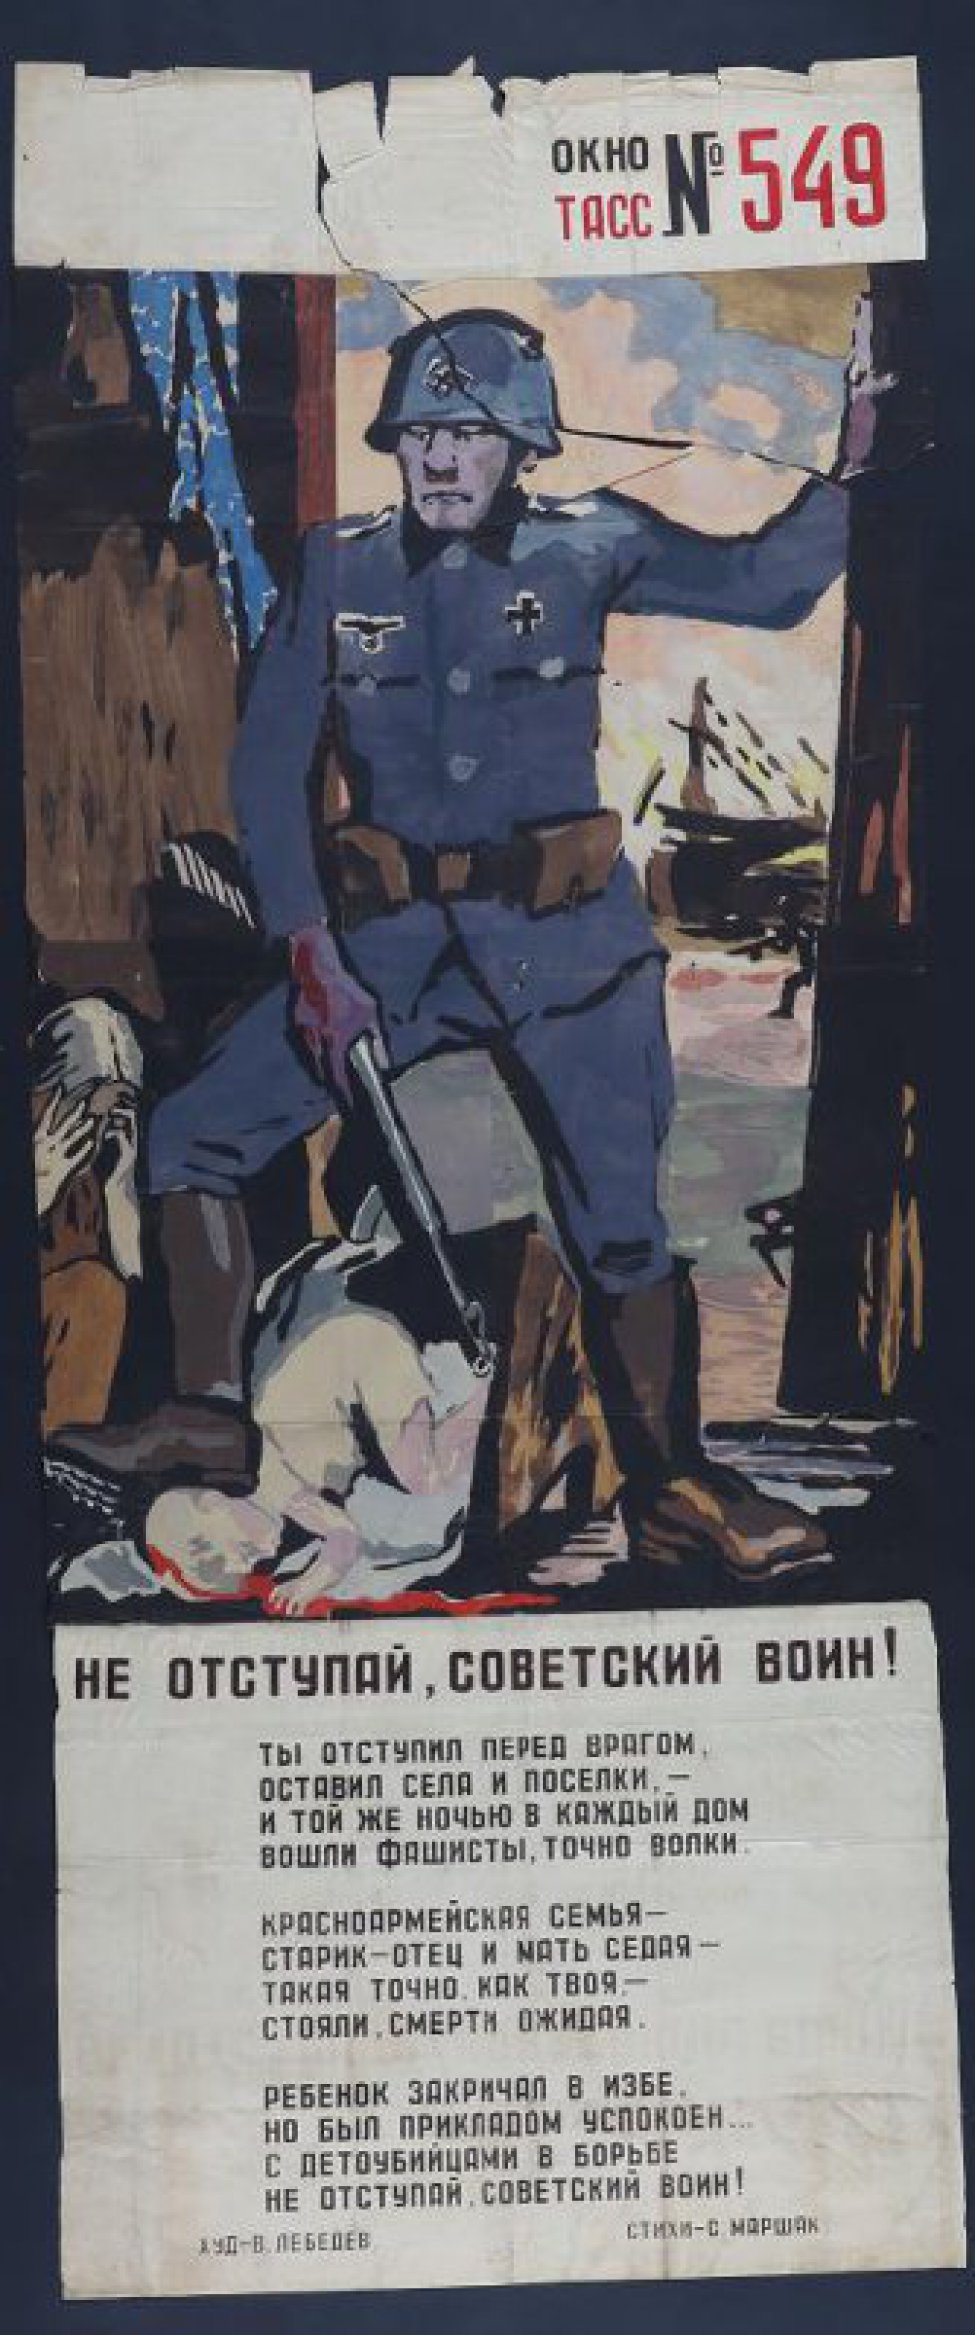 Изображен вооруженный фашист, у ног его лежит убитый ребенок, текст С.Маршак " Не отступай, советский воин! Ты отступил перед врагом, оставил села и поселки,- и той же ночью в каждый дом вошли фашисты точно волки".